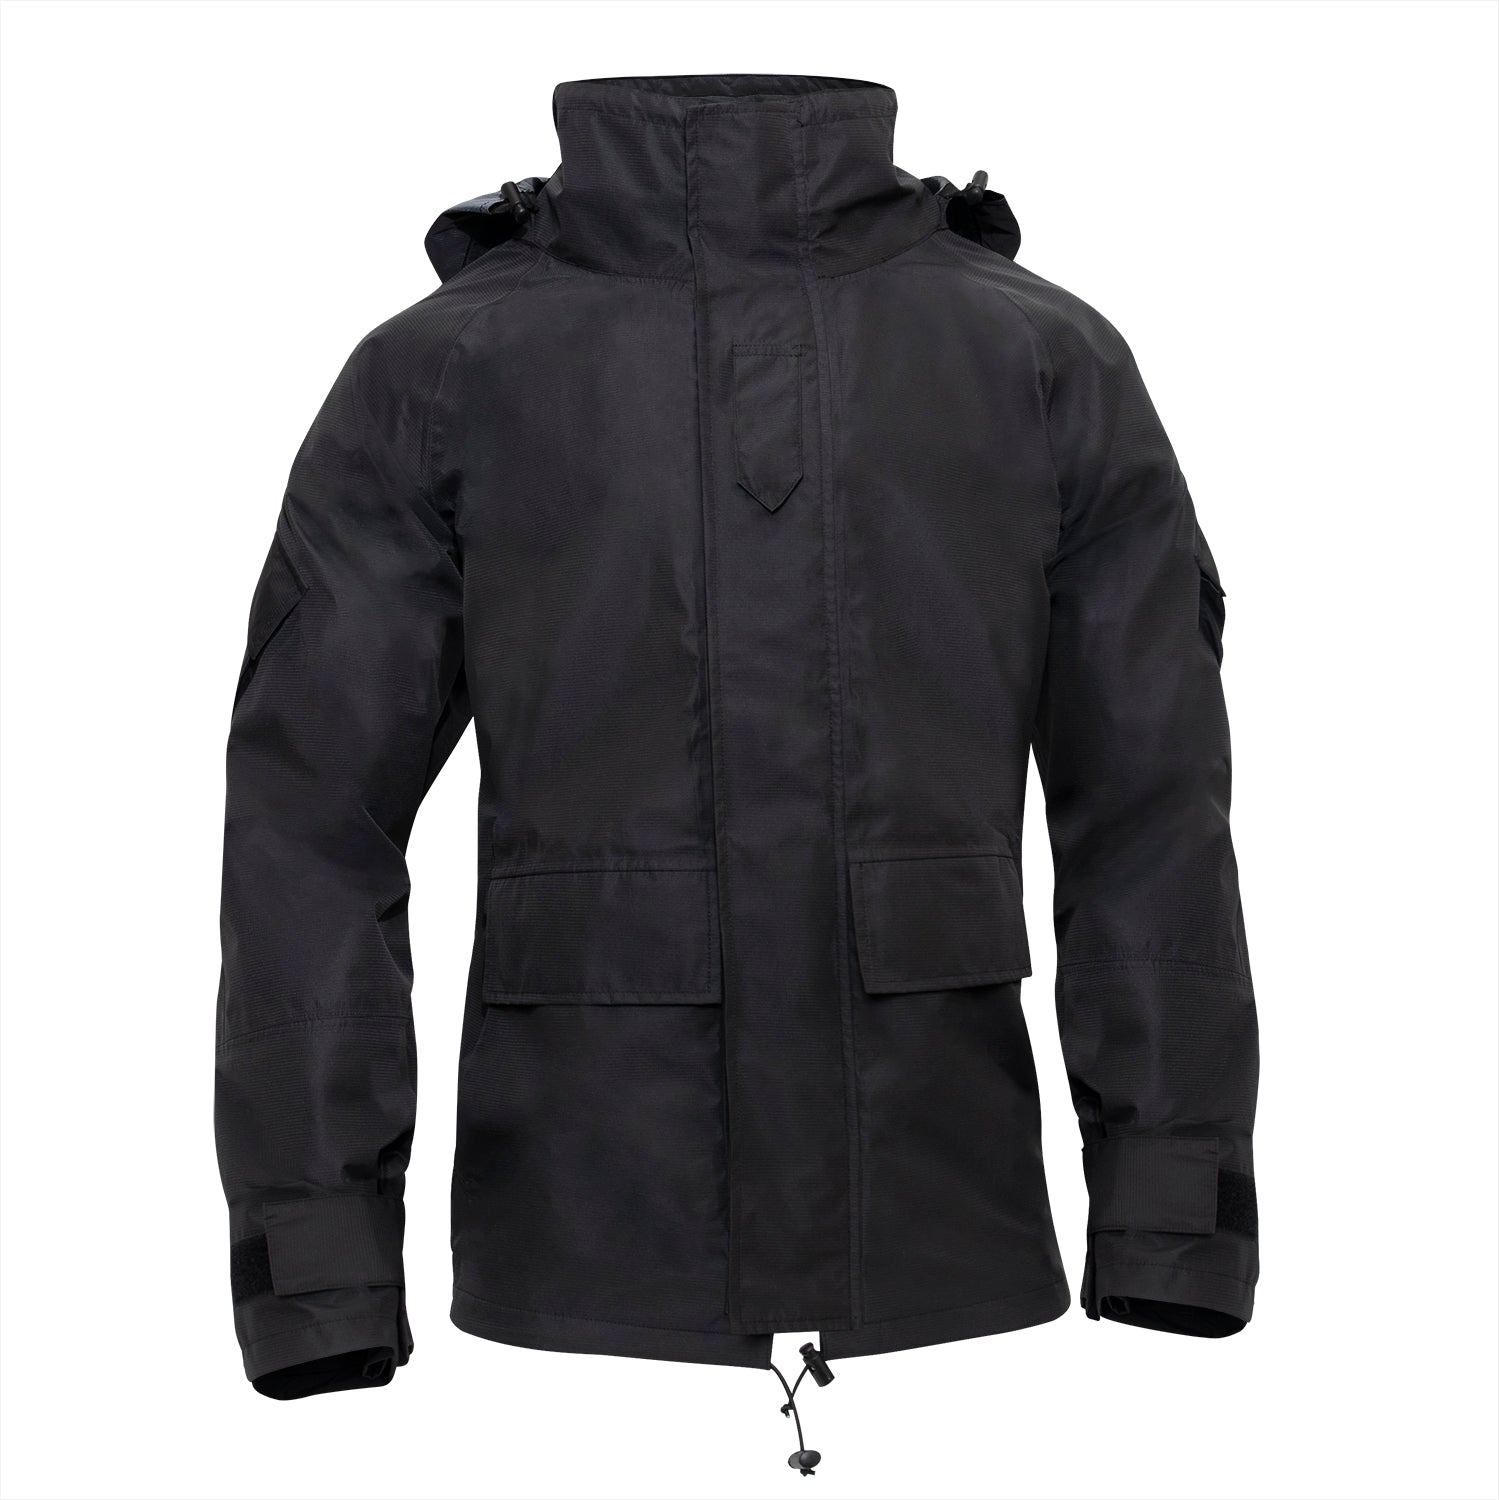 Rothco Tactical Hard Shell Waterproof Jacket